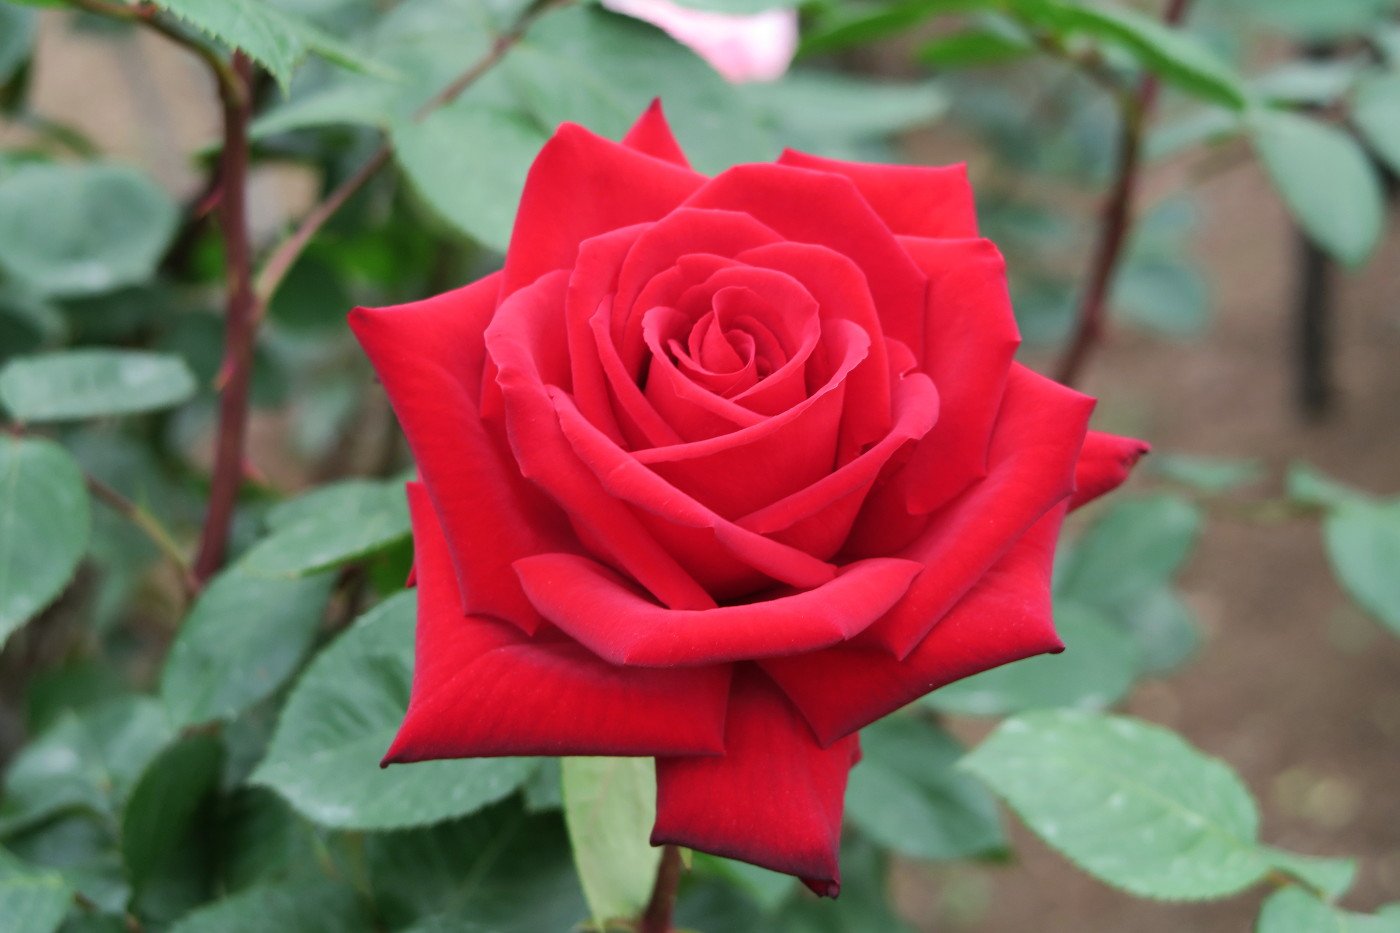 旧古河庭園 旧古河庭園のバラ19 熱情 色も形も美しく だれもが 赤いバラ でイメージするような花です 本当に形の整ったきれいな赤いバラ 目が覚めるような鮮やかさです 人気投票でも赤バラはもっと人気が出てほしい T Co Lxuygadnpf